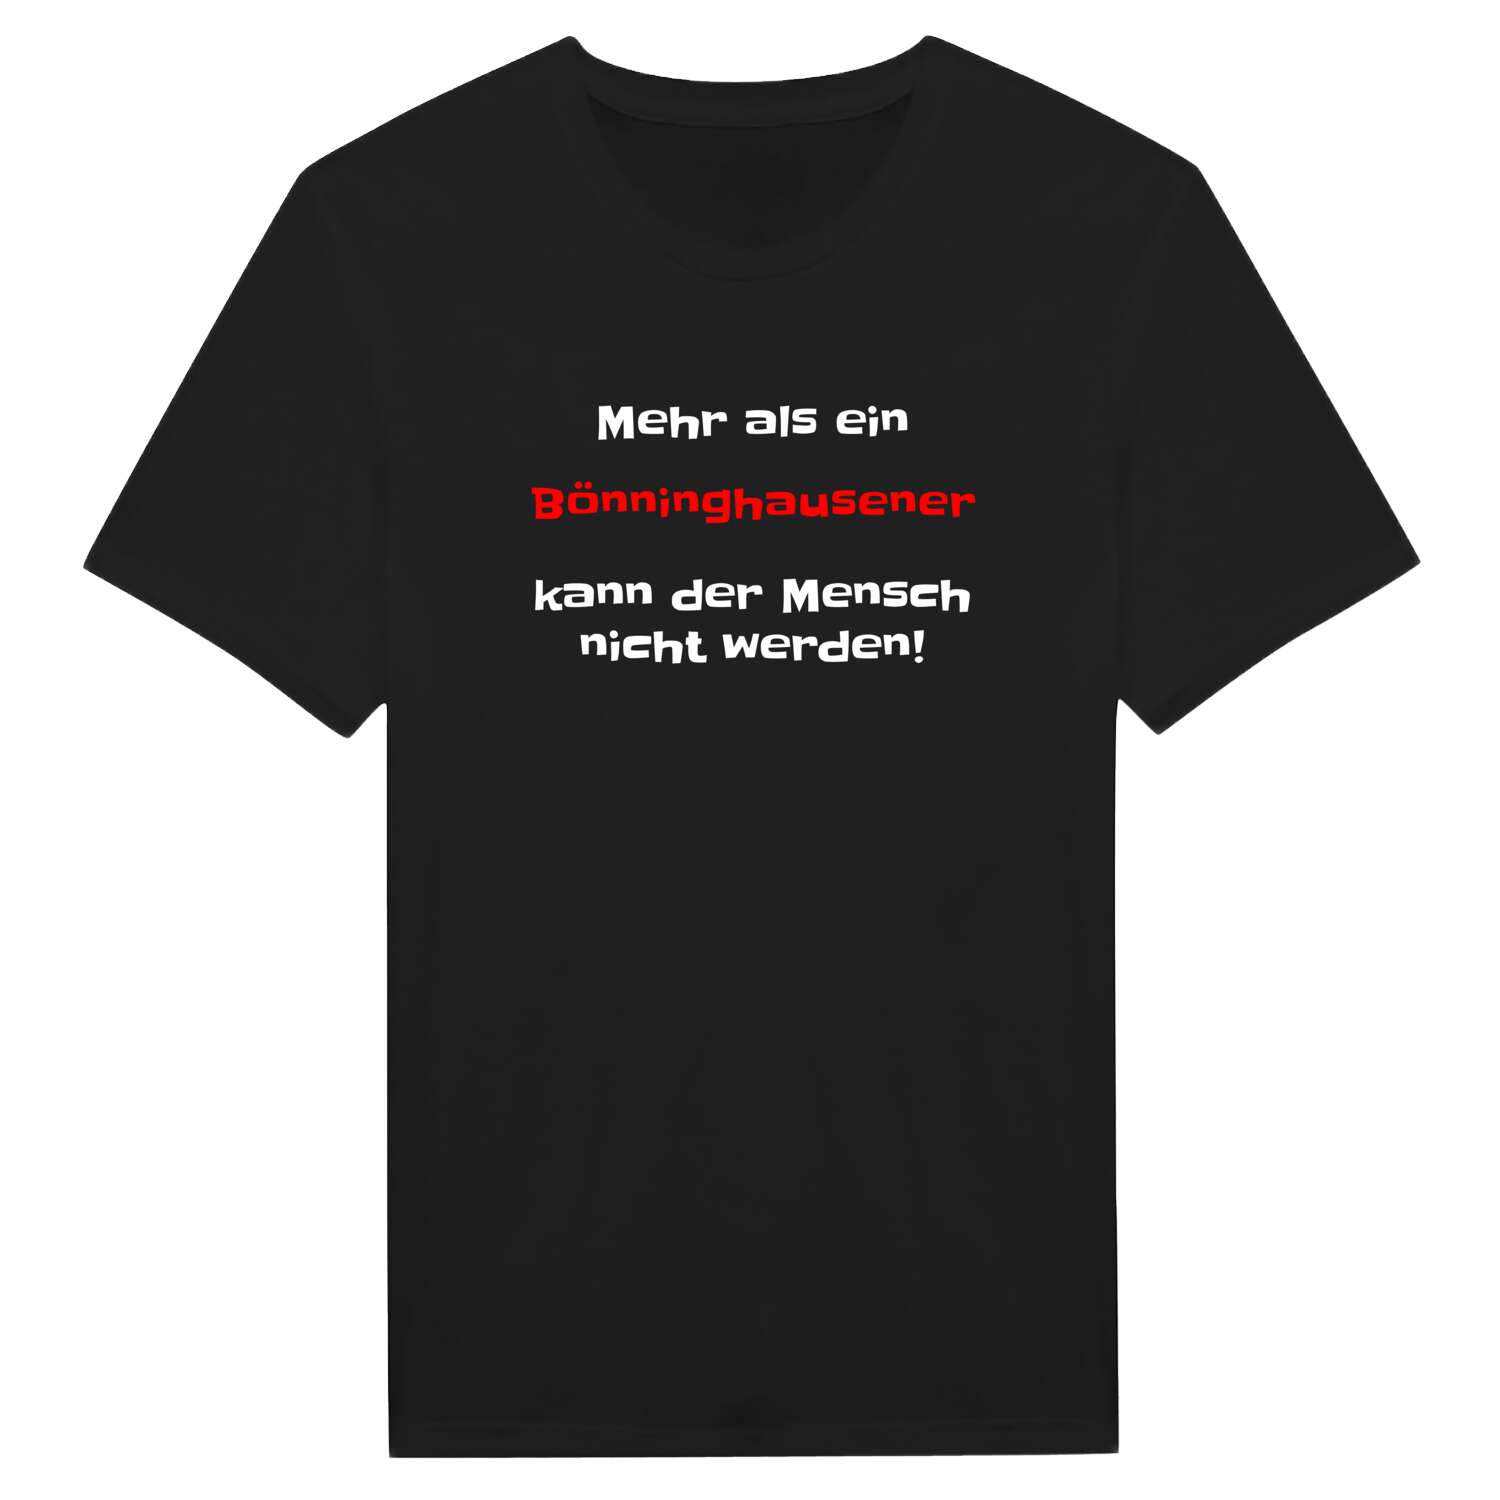 Bönninghausen T-Shirt »Mehr als ein«